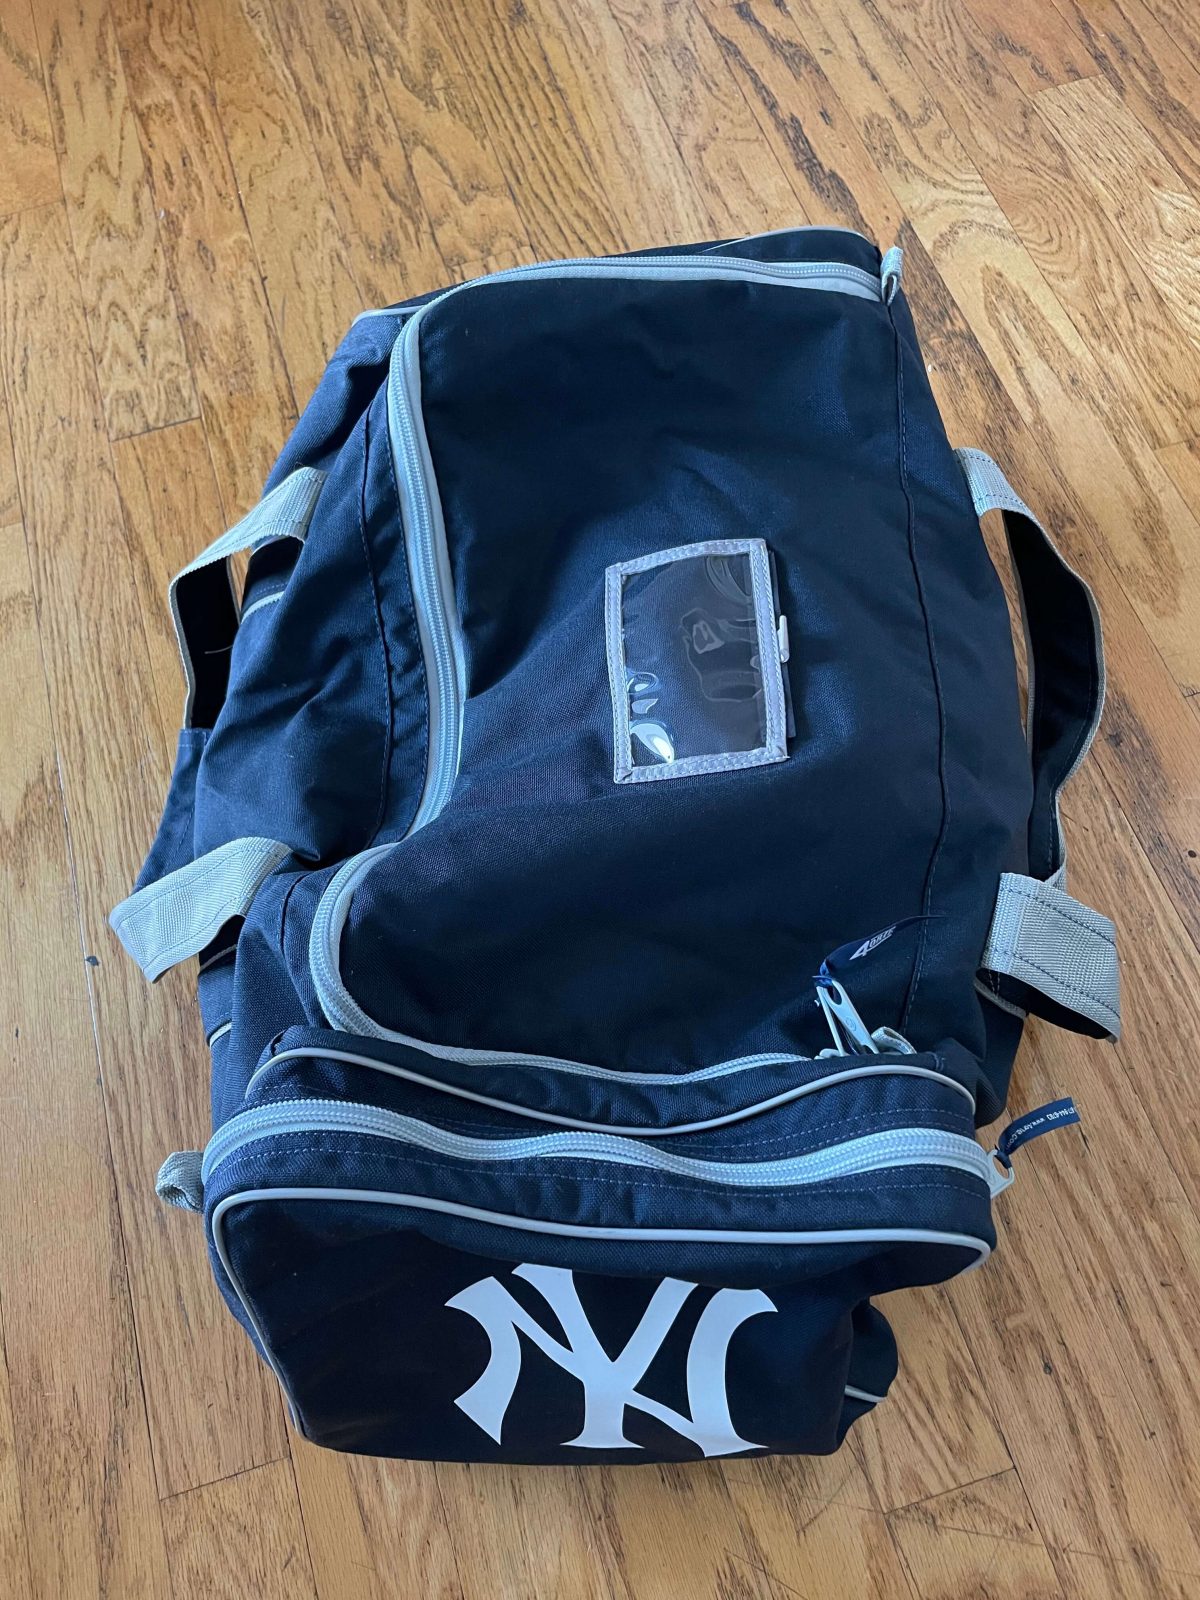 New York Yankees Bags, Yankees Bags